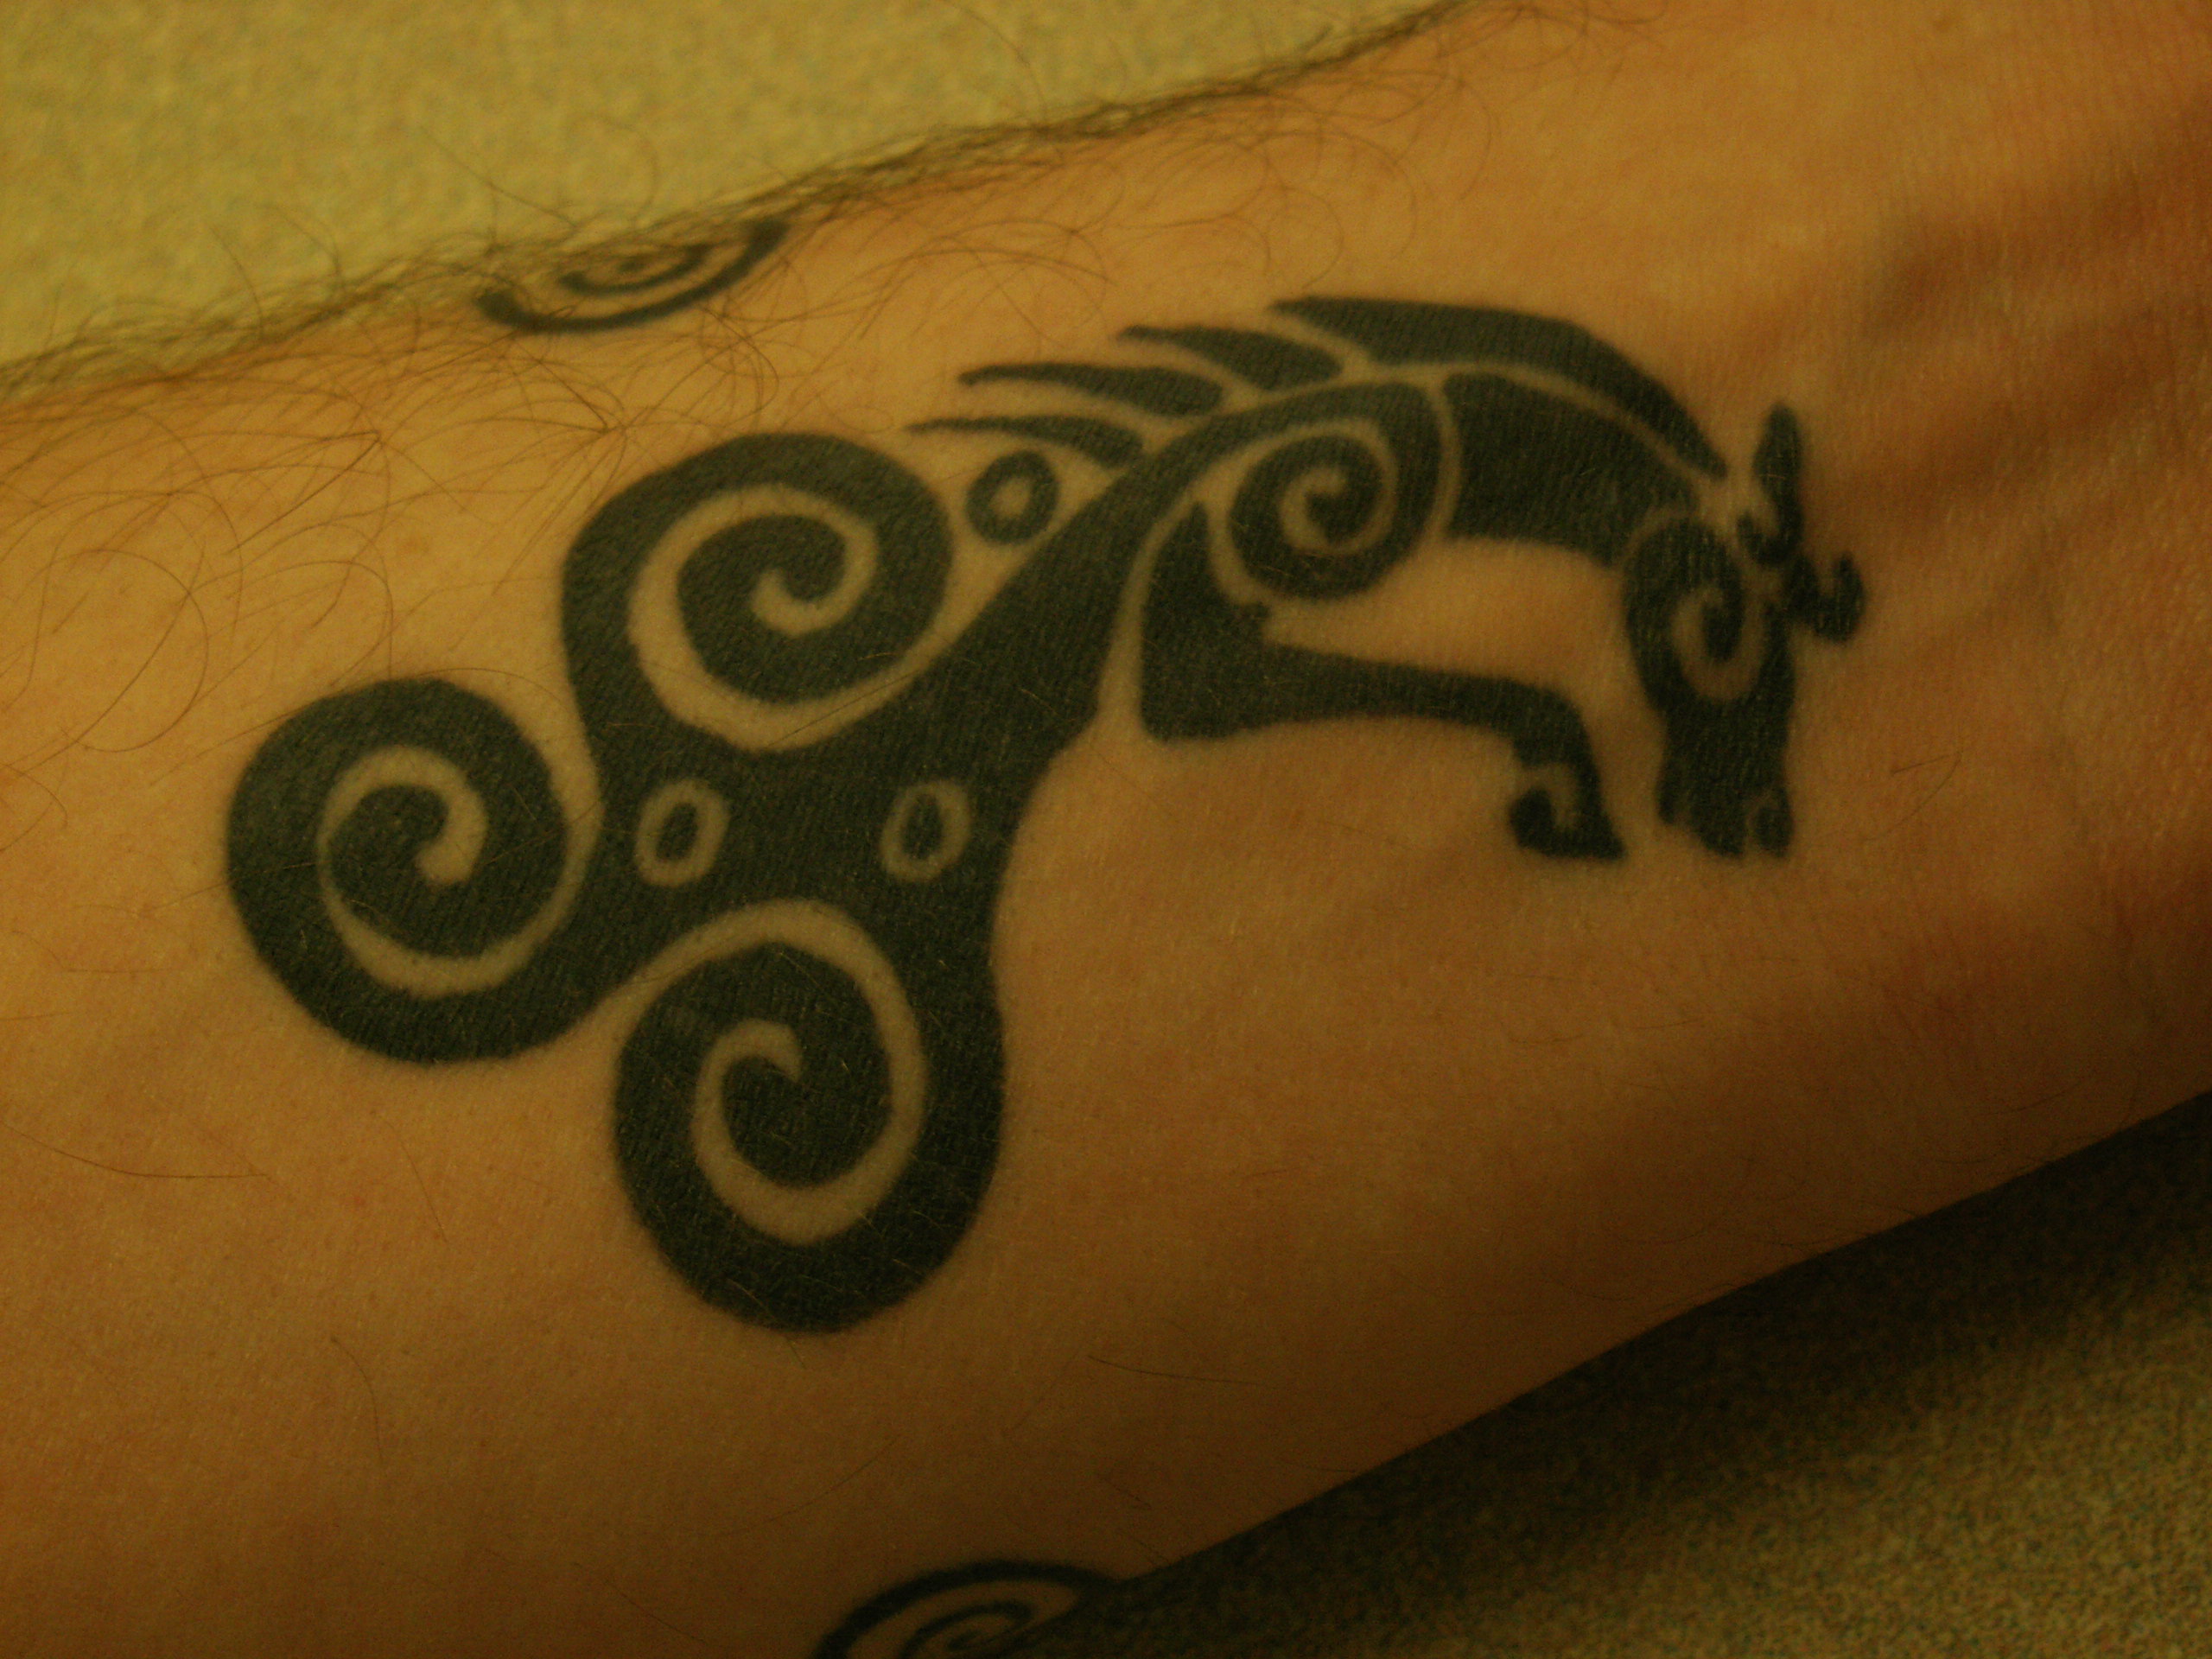 Tatuagem tribal com motivo celta no pulso